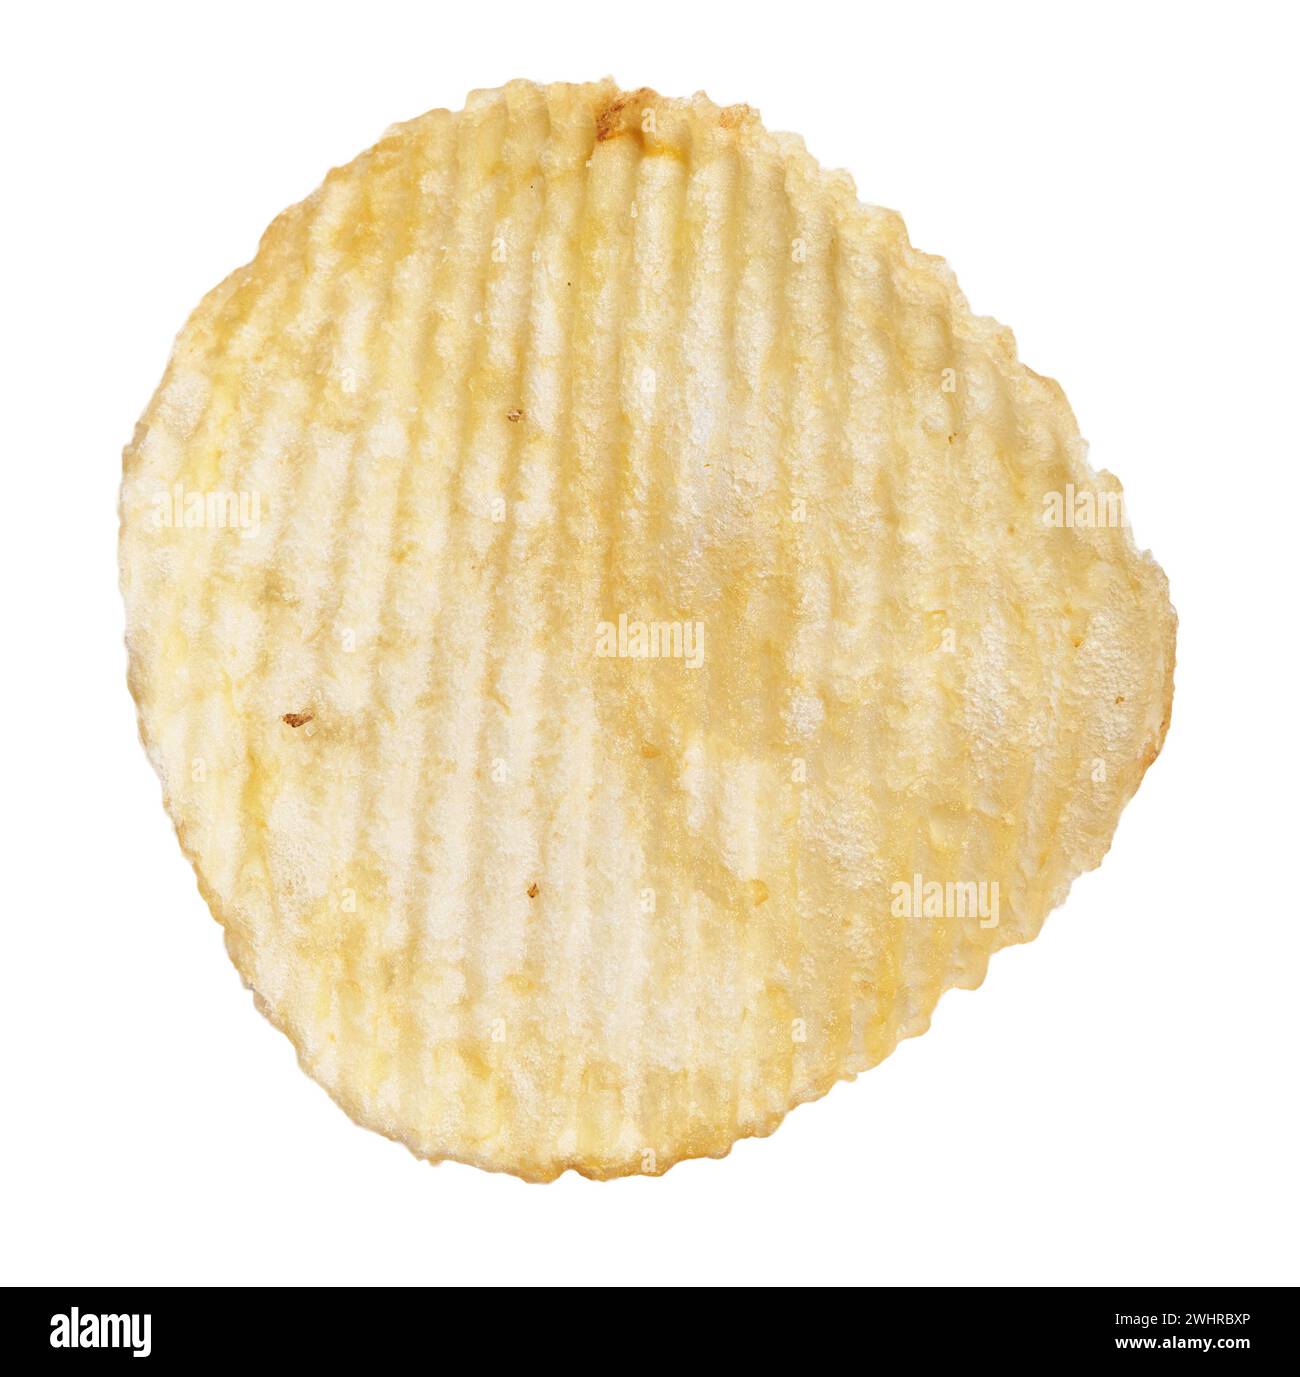 Ein einzelner, knuspriger, geriffelter Kartoffelchip, isoliert auf weißem Hintergrund, der einen einfachen Snack demonstriert. Stockfoto